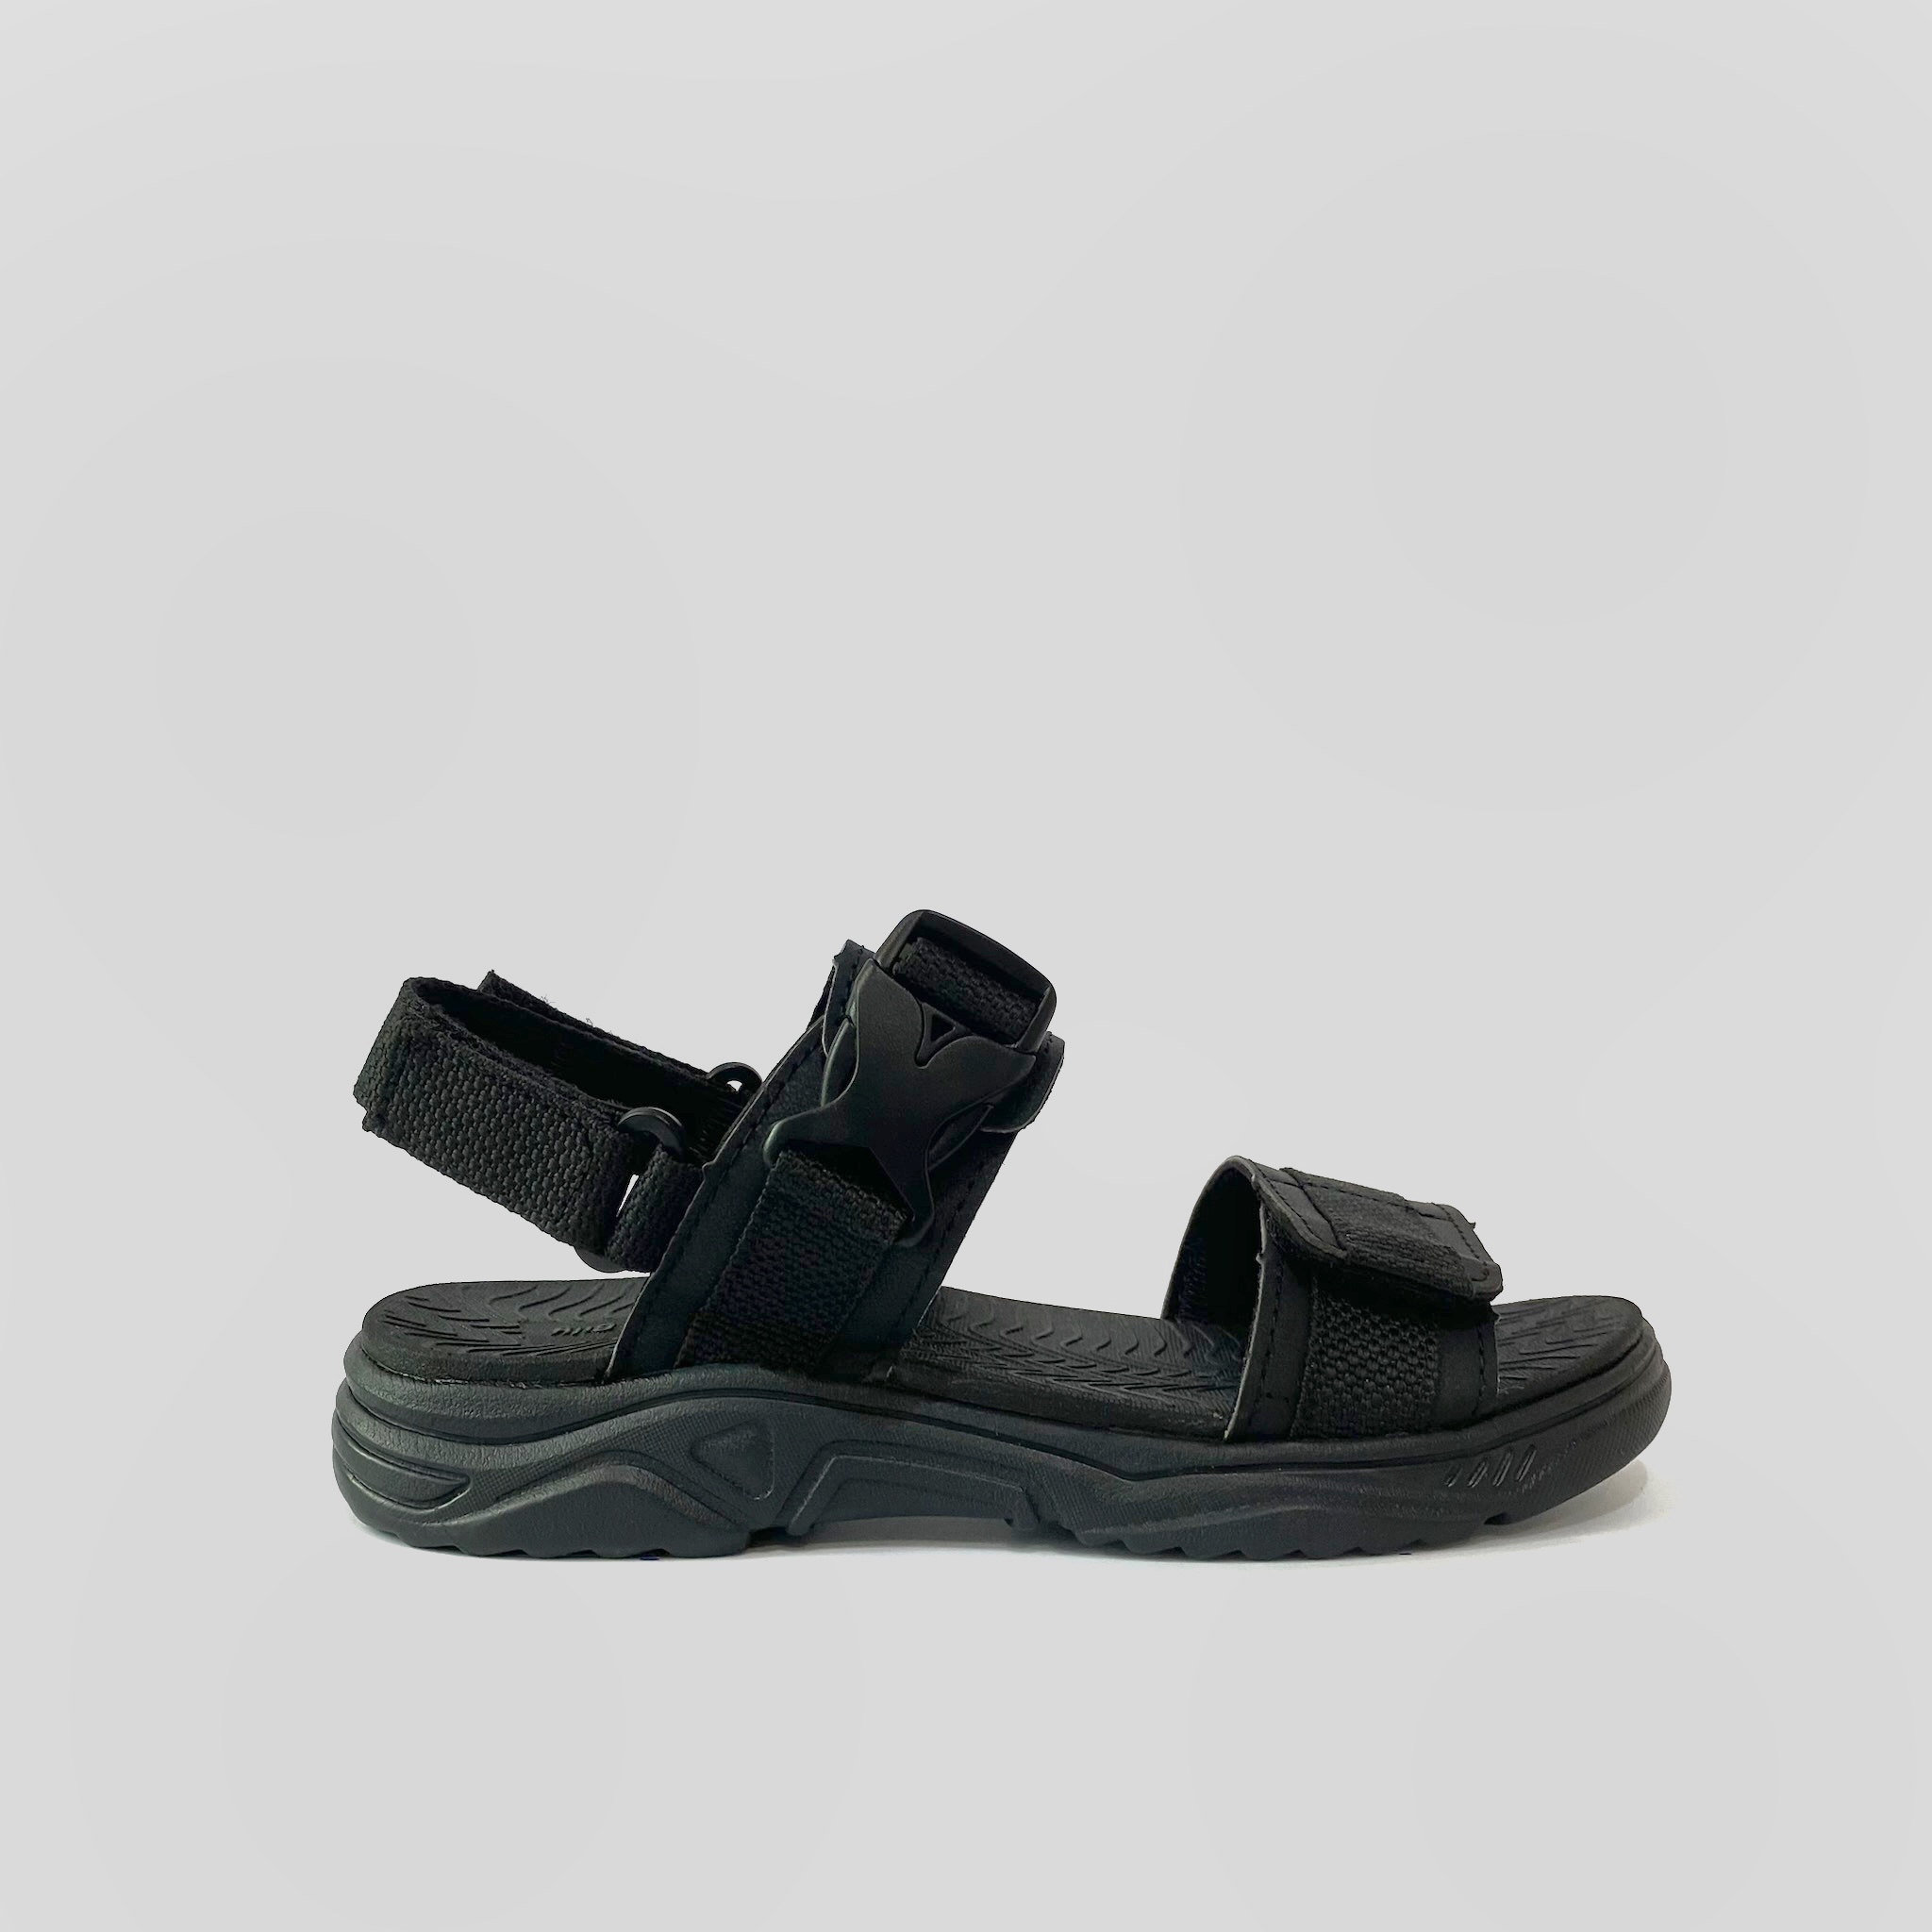 Hình ảnh Giày Sandal Nam The Bily Quai Ngang - Màu Đen BL03D